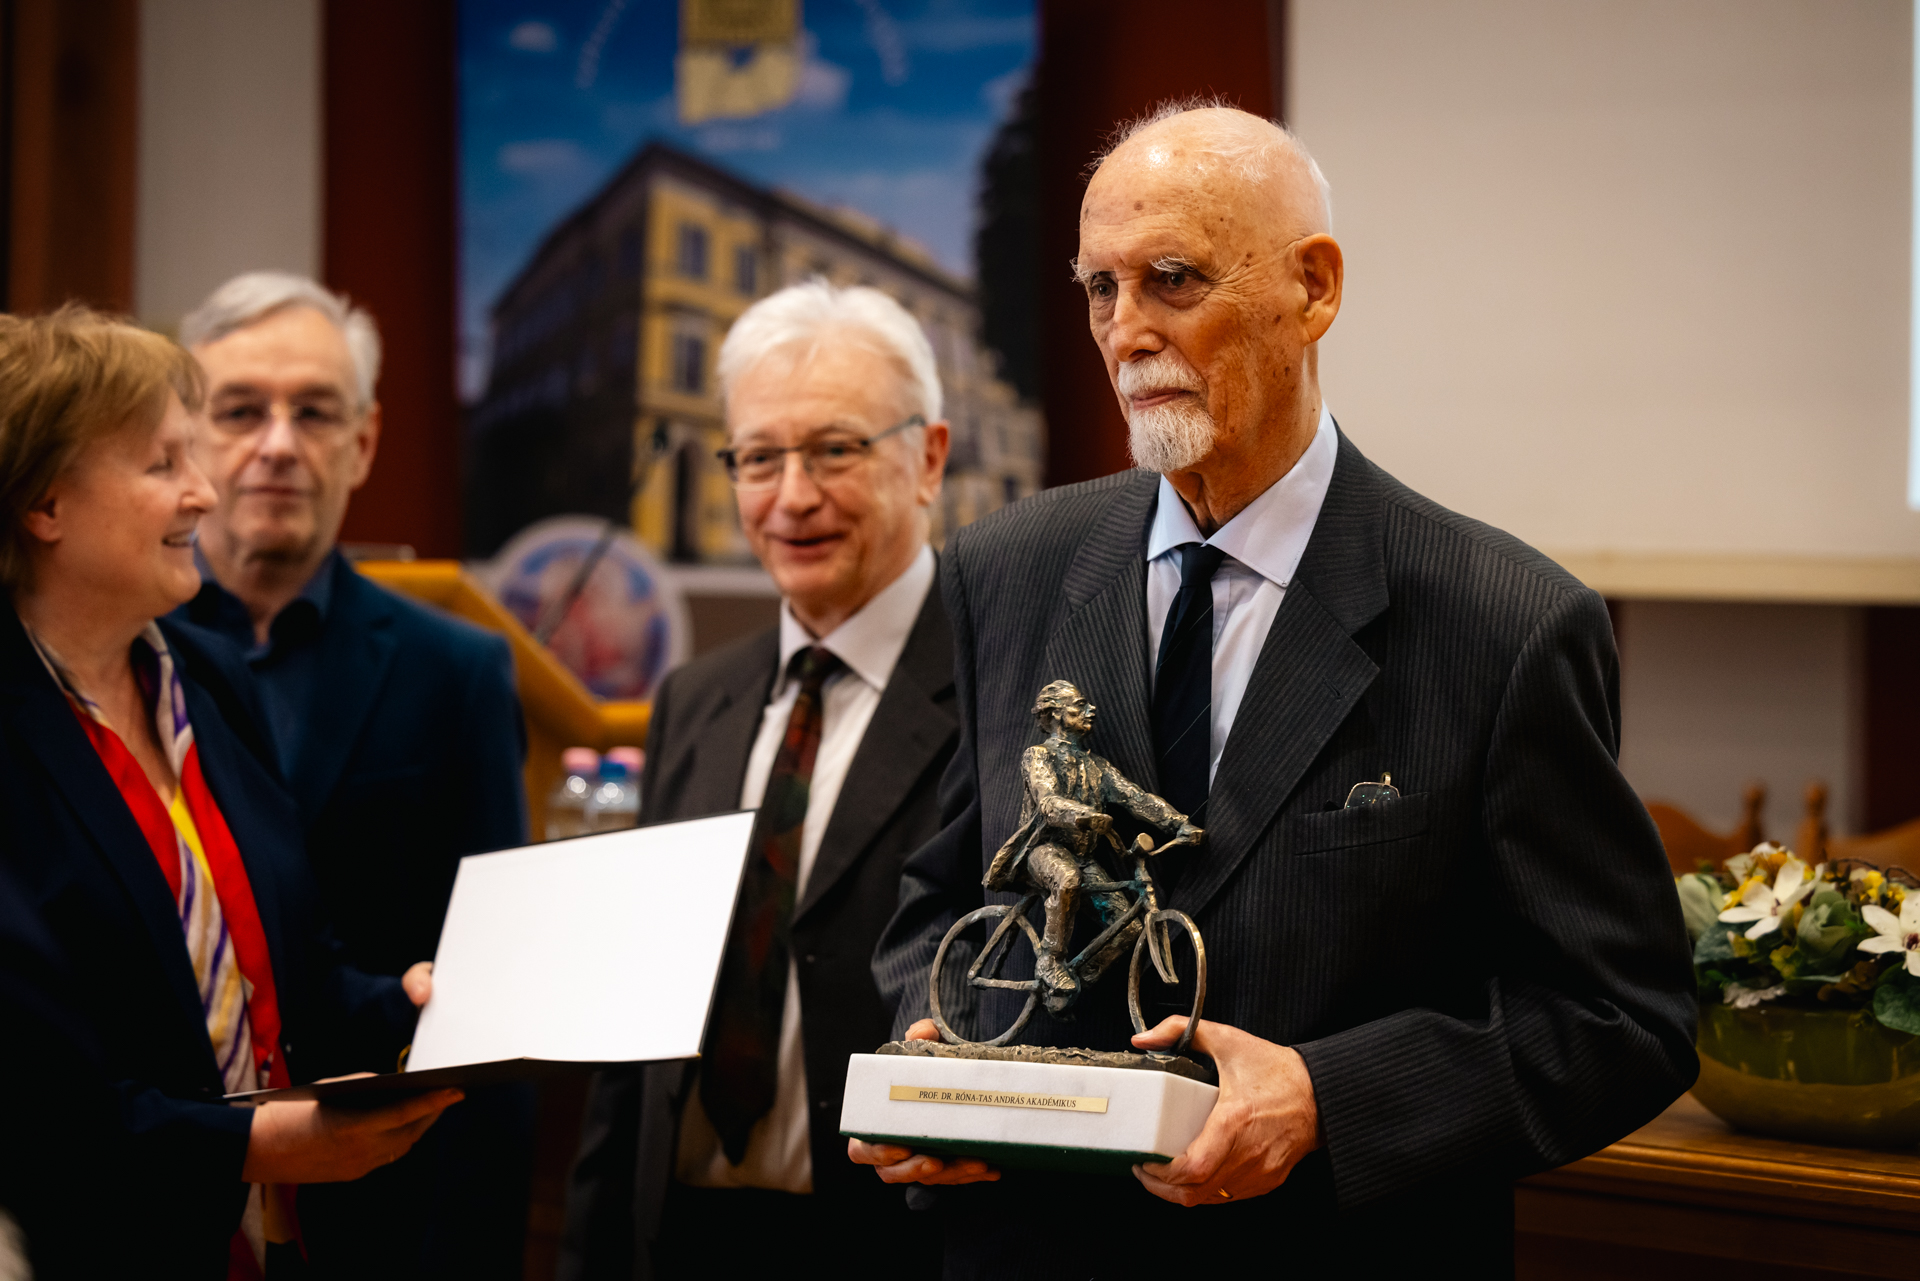 Dr. Róna-Tas András átveszi a díjat Dr. Hohmann Judittól és Dr. Kemény Lajostól, mellettük a SZAB elnöke, Dr. Krisztin Tibor látható.